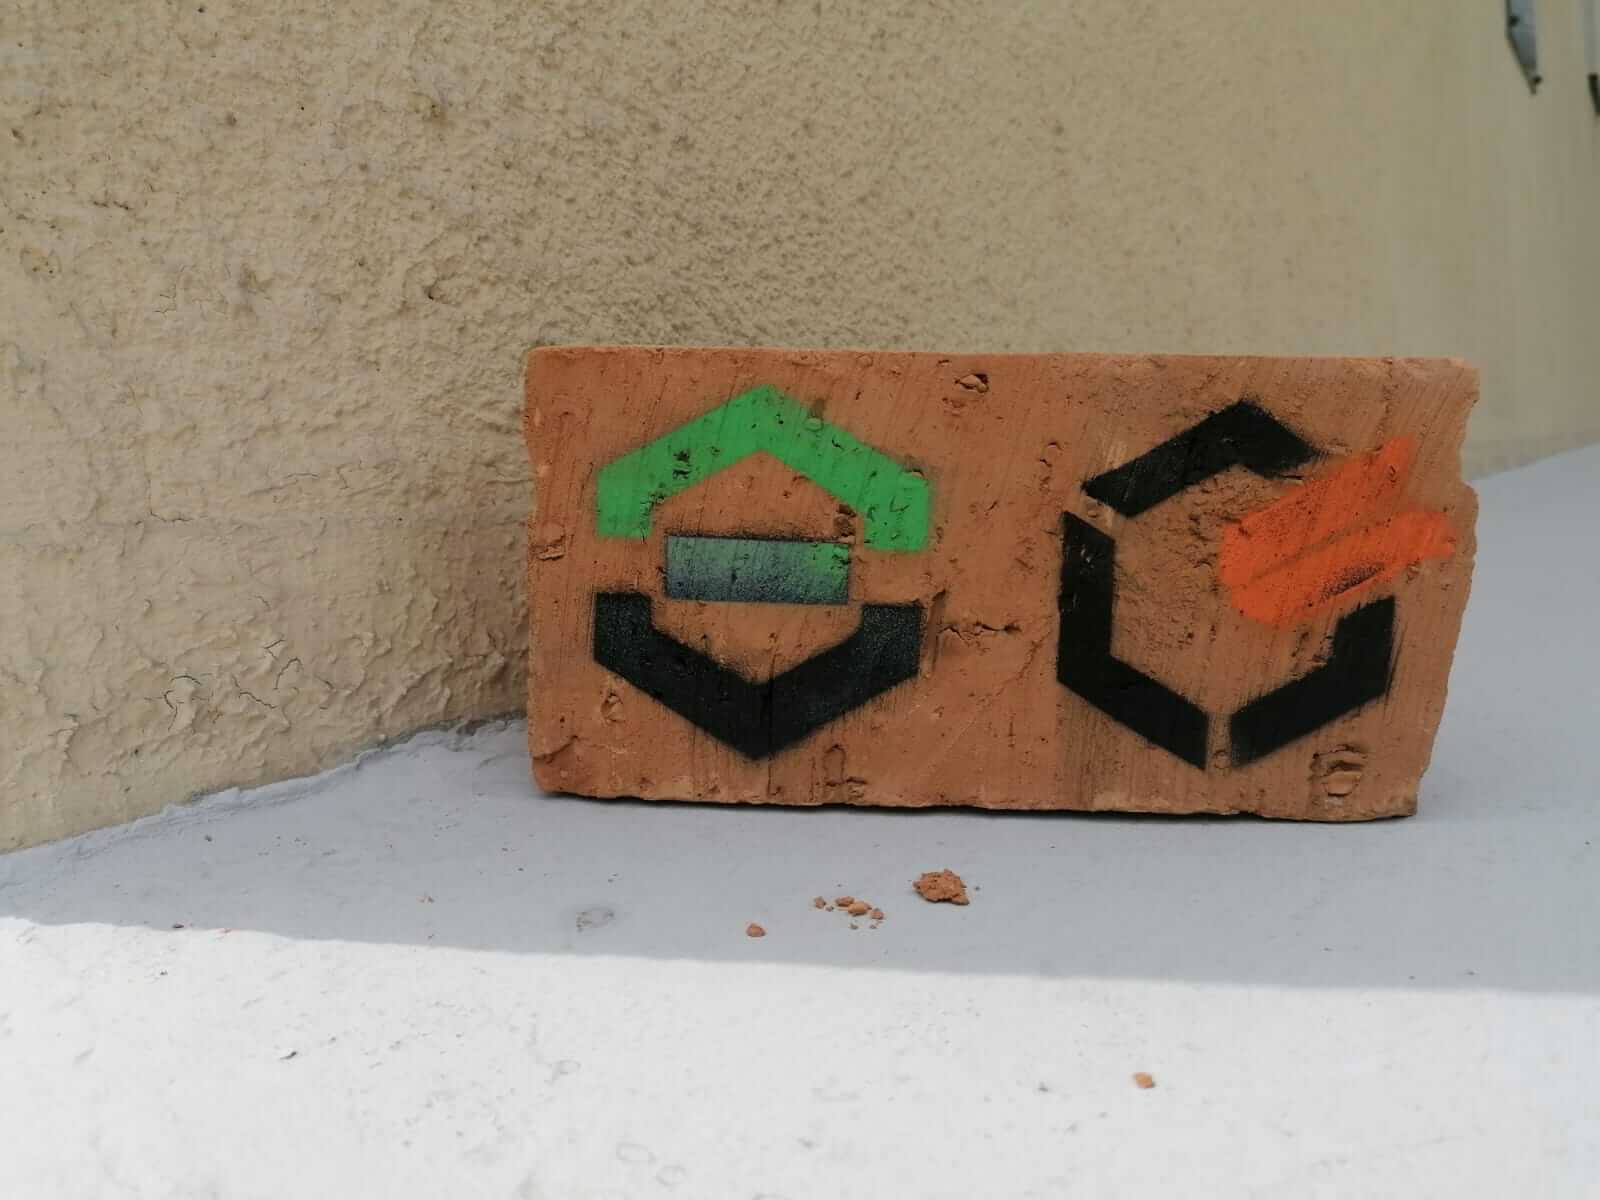 Pomarańćzowa cegła położona na szarym murku. Na lewej połówce cegły narysowane jest logo AGH na prawej połówce logo WRSS.